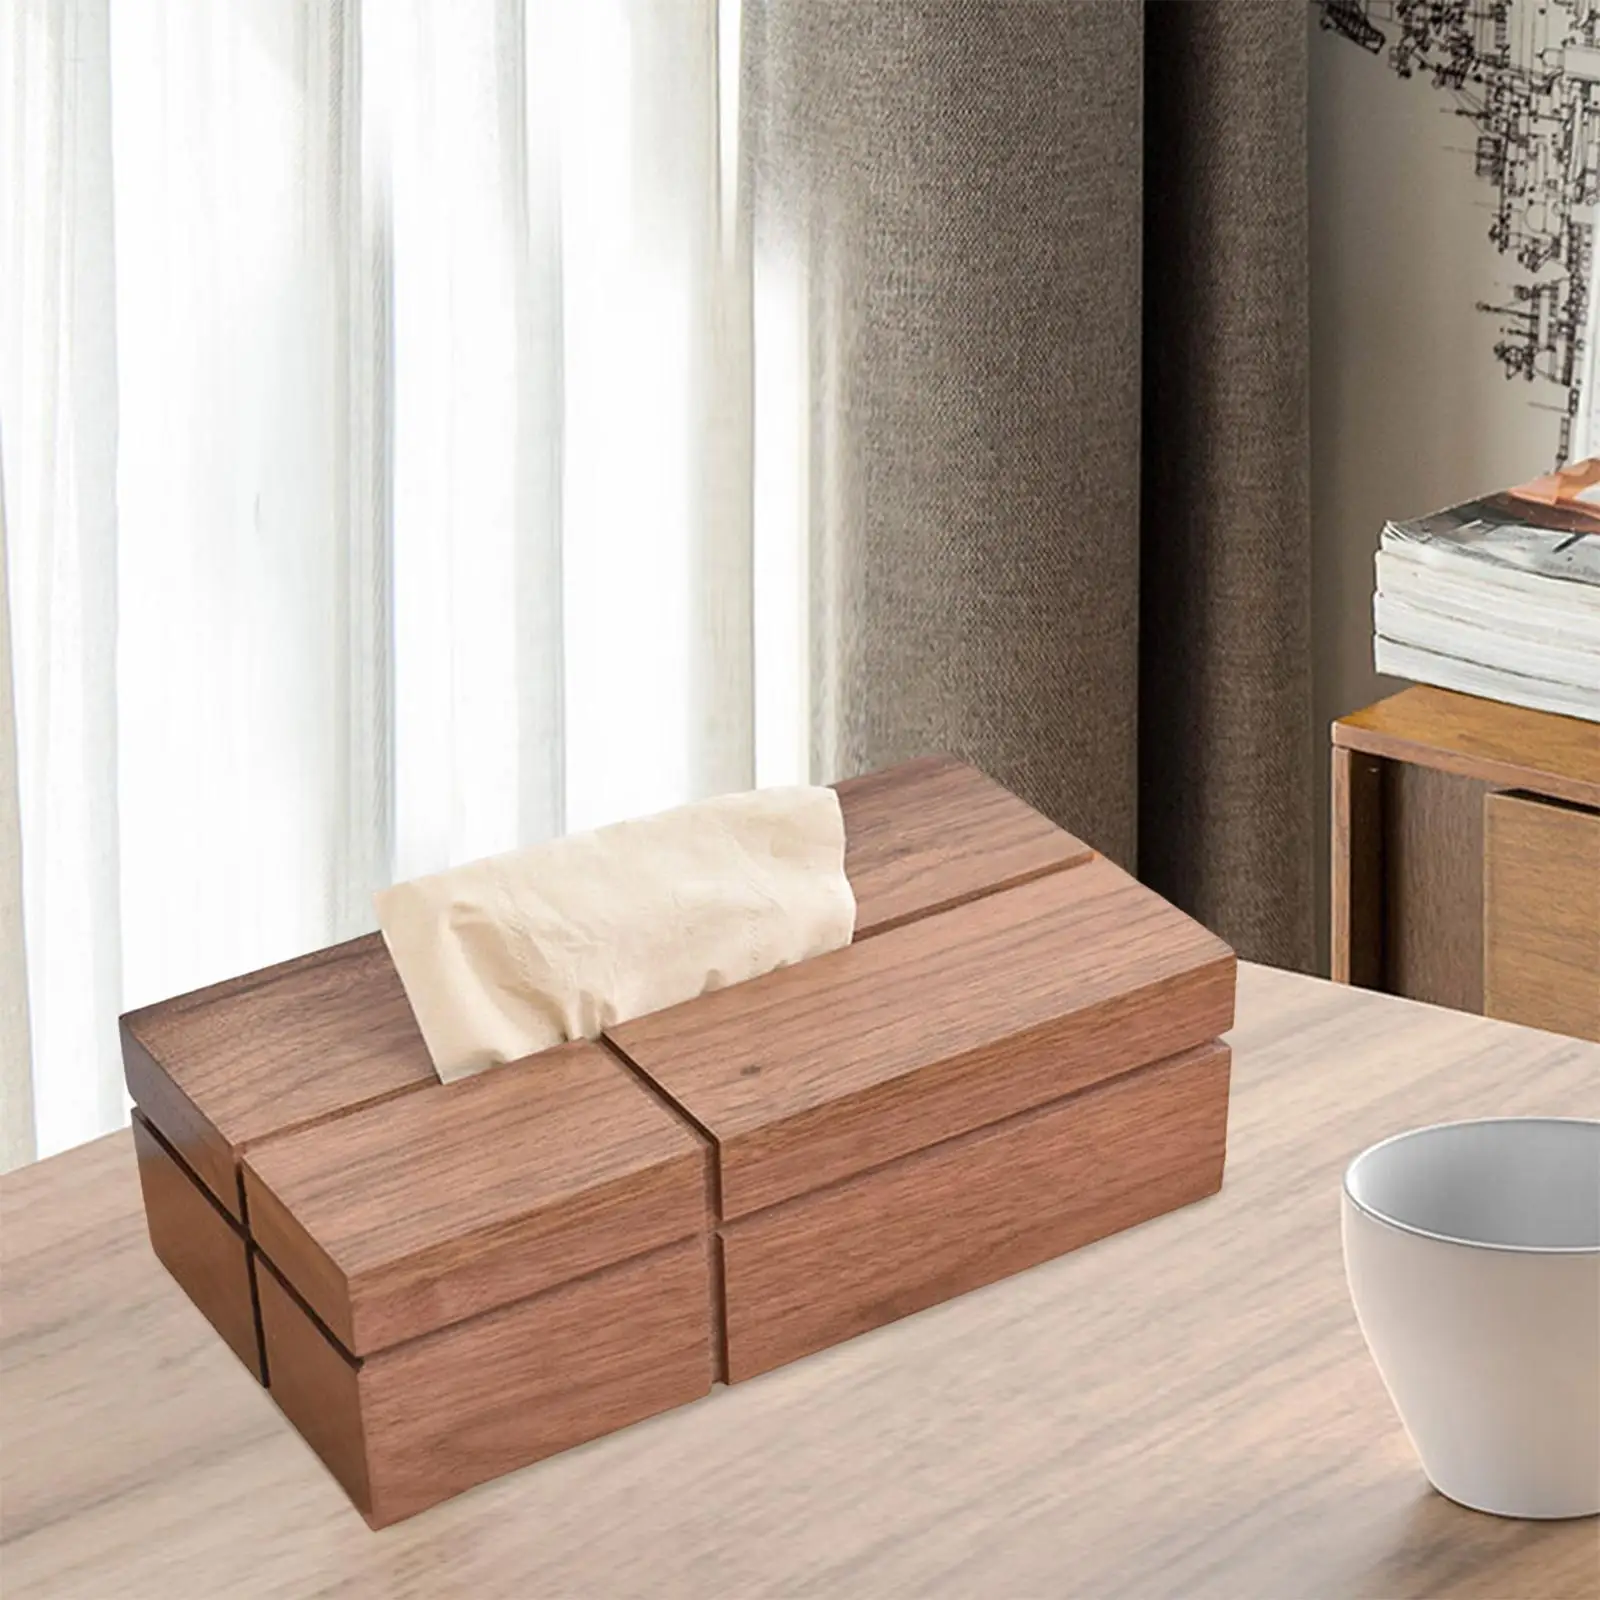 Wooden Napkin Paper Holder Case Retro Rectangular Tissue Box Holder for Living Room